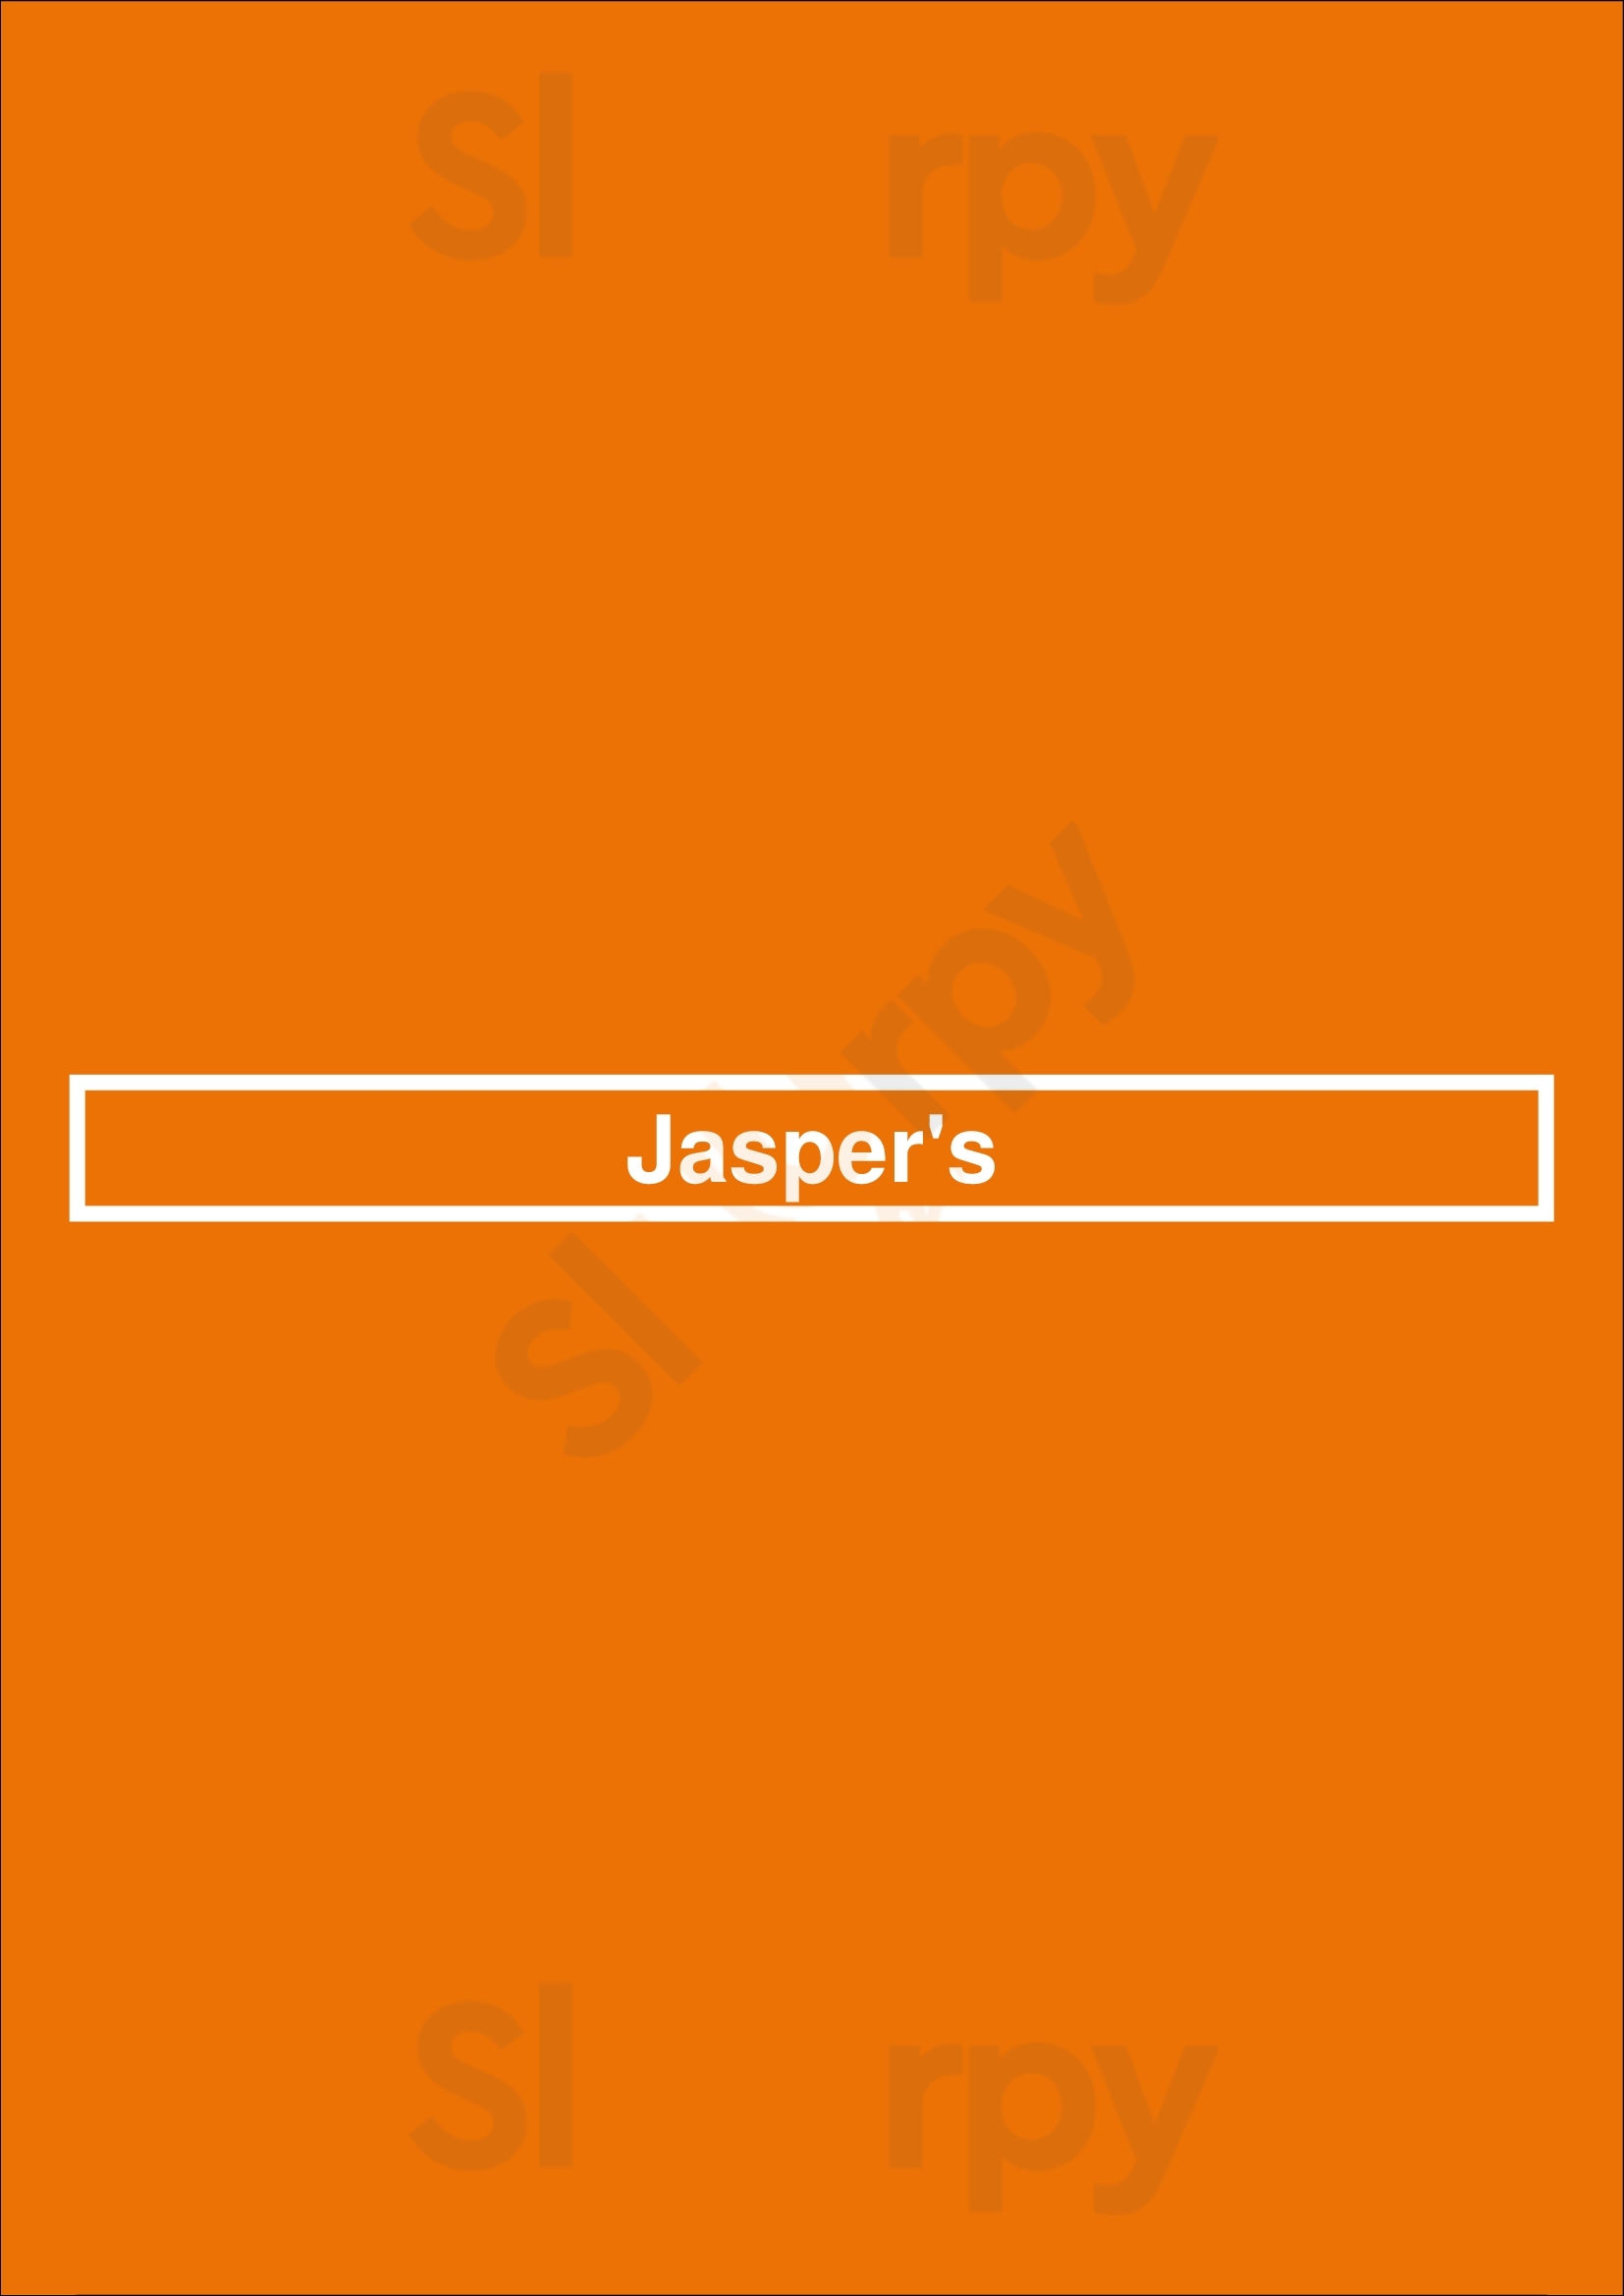 Jasper's Frankfurt am Main Menu - 1